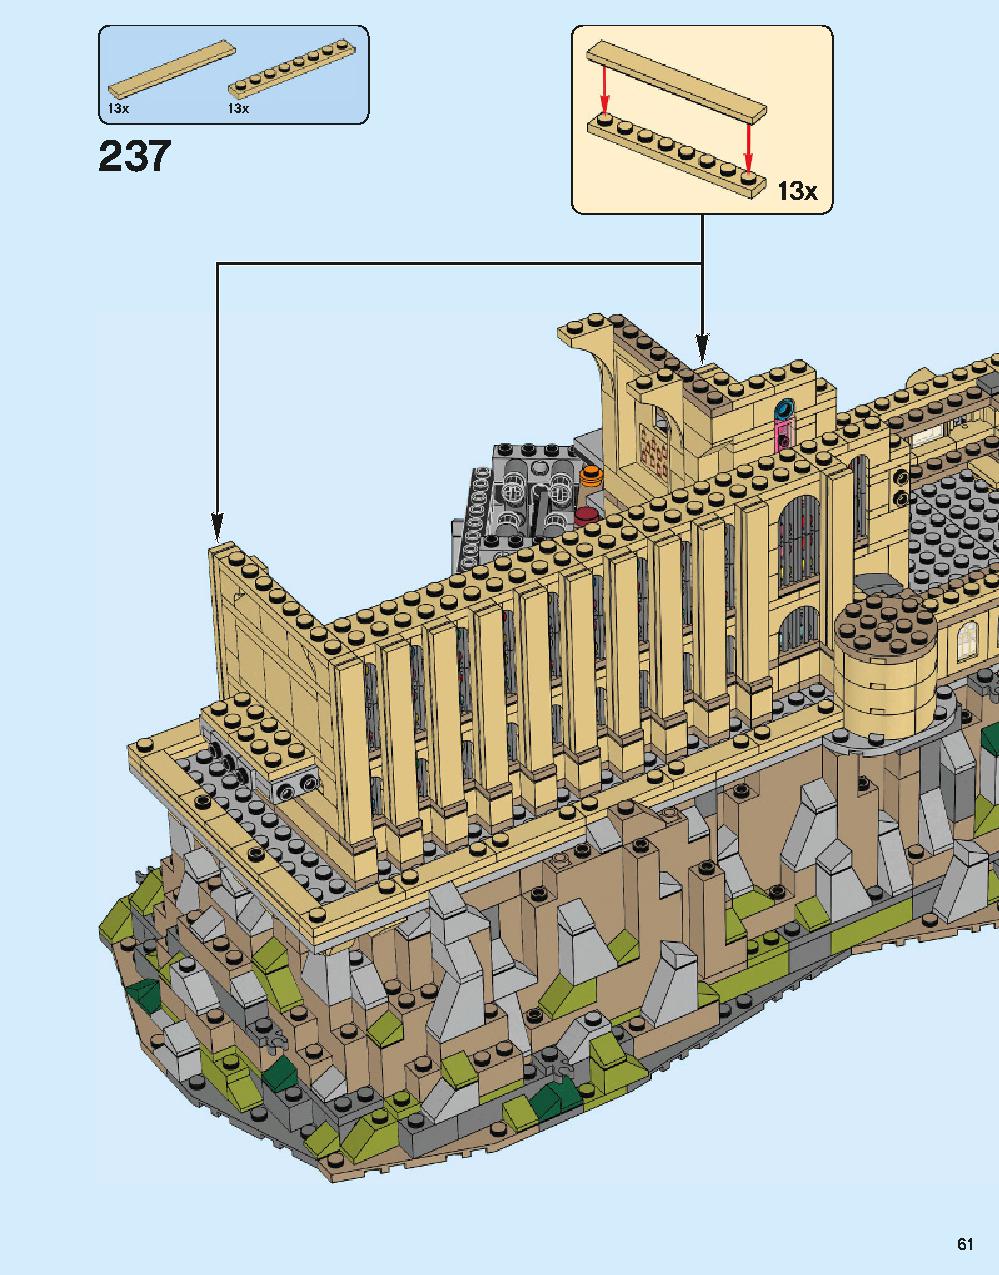 ホグワーツ城 71043 レゴの商品情報 レゴの説明書・組立方法 61 page